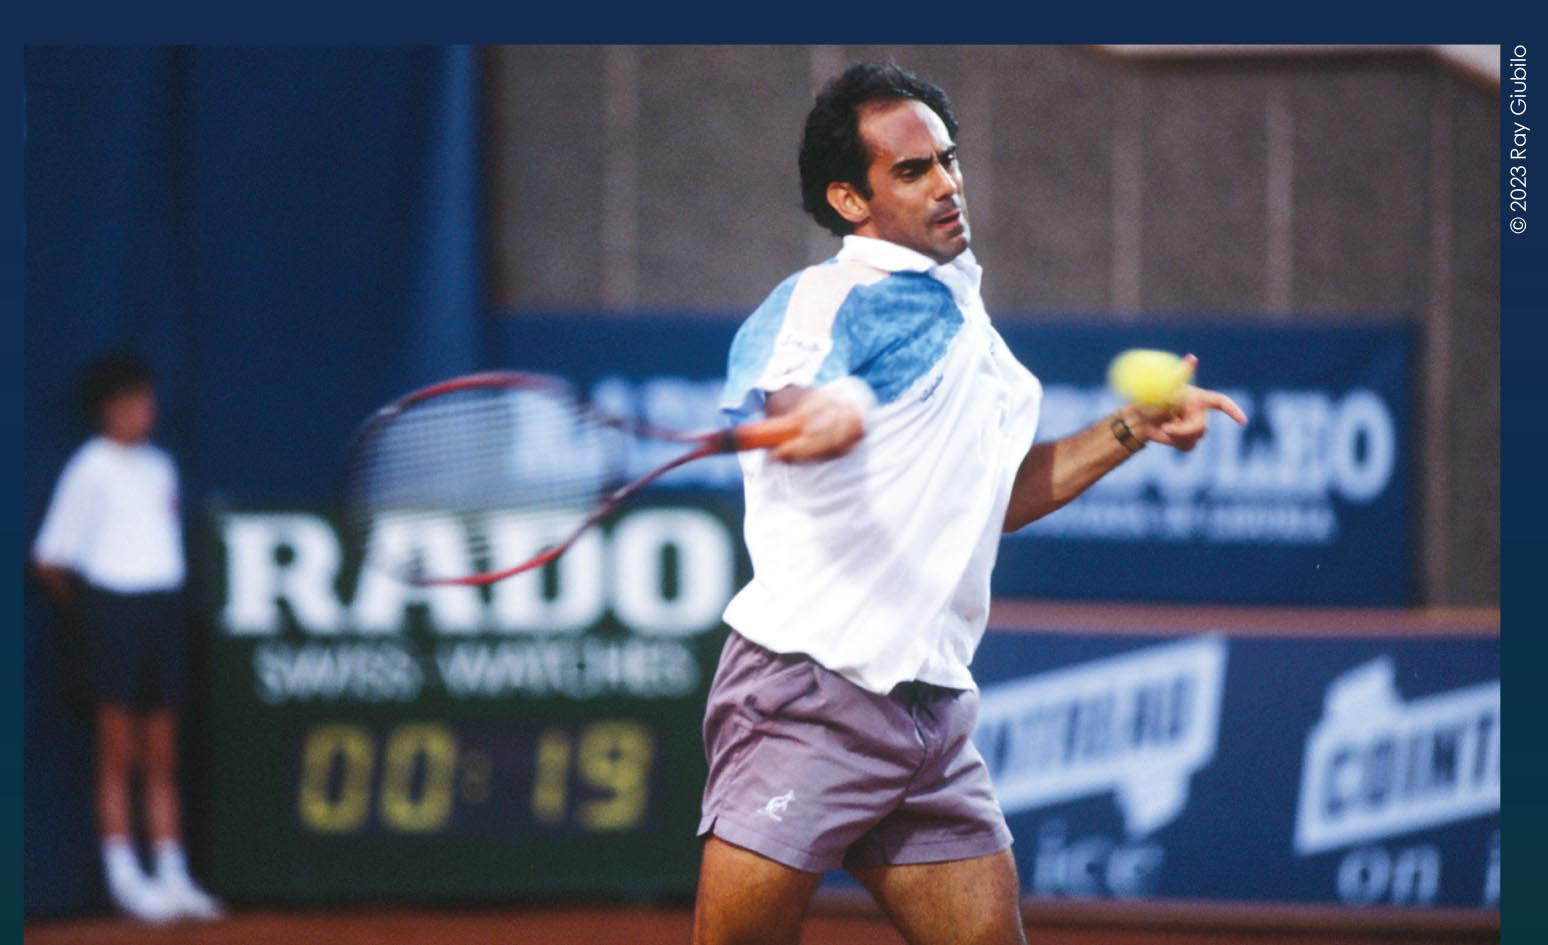 “C’era una volta il (mio) tennis”, autobiografia di Claudio Pistolesi